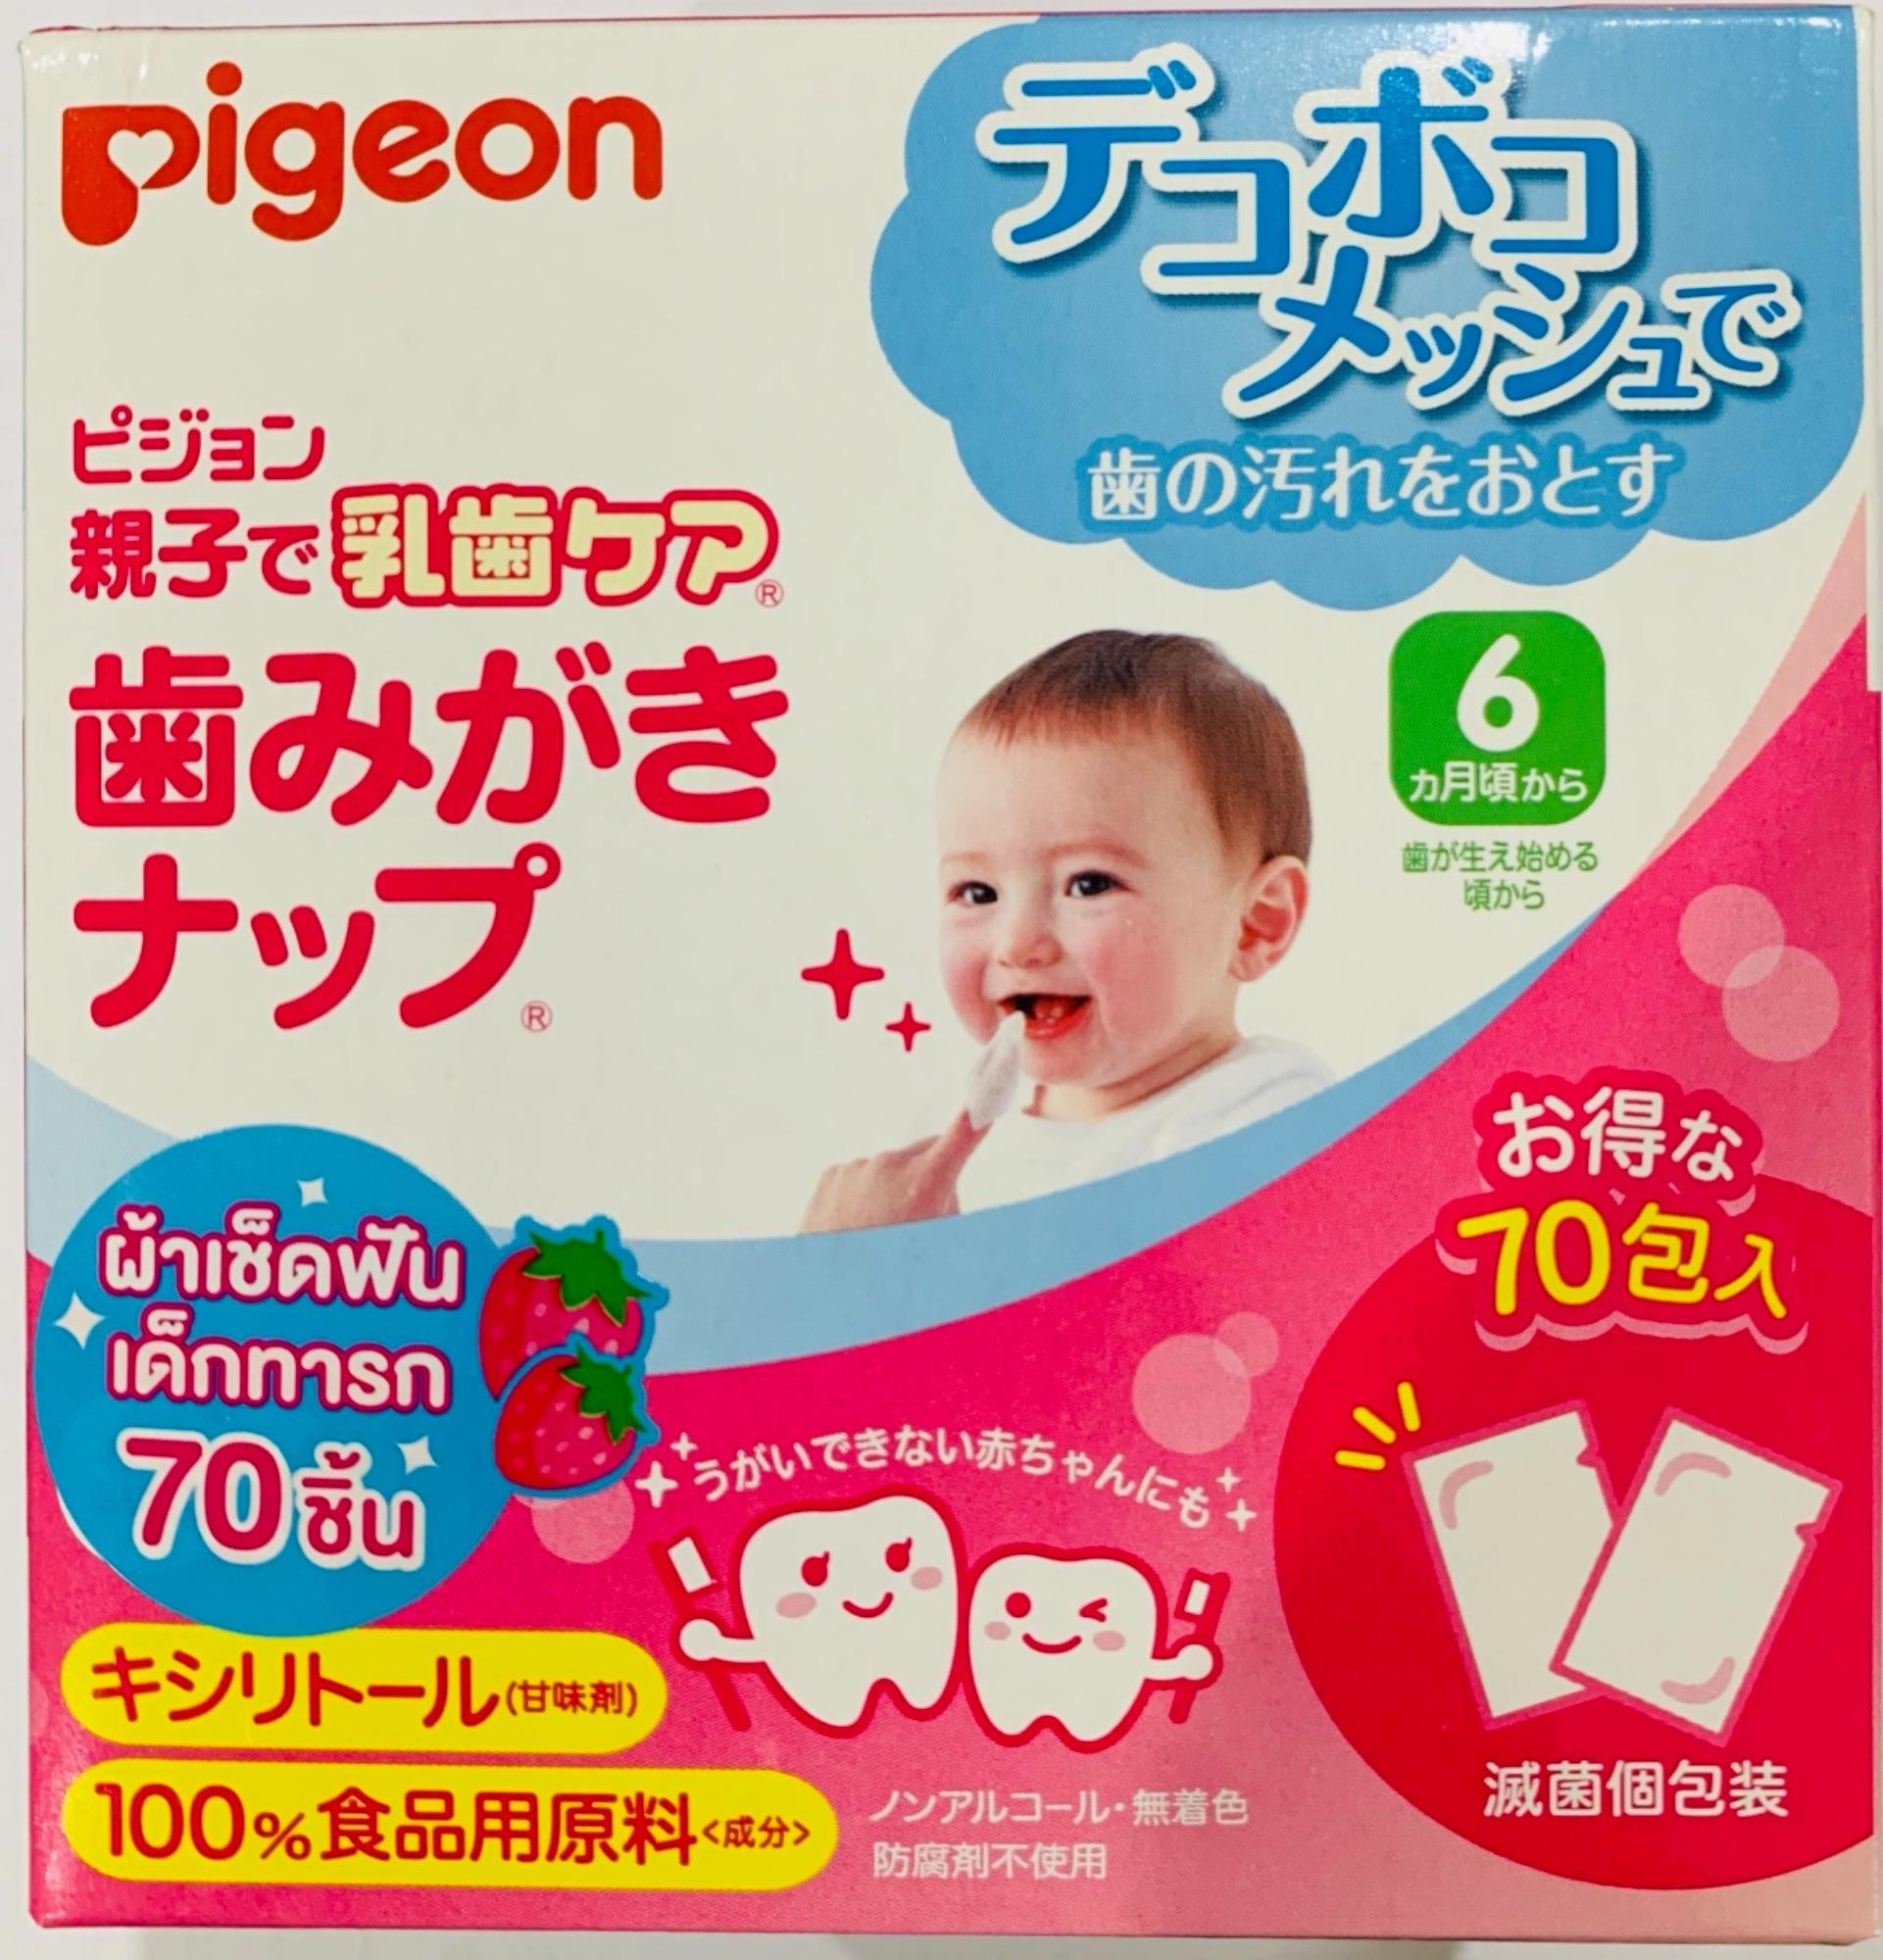 ราคา Pigeon Infant Tooth Wipes ผ้าเช็ดฟัน เหงือก ลิ้น ทารก (แพ็ค 70 ชิ้น)